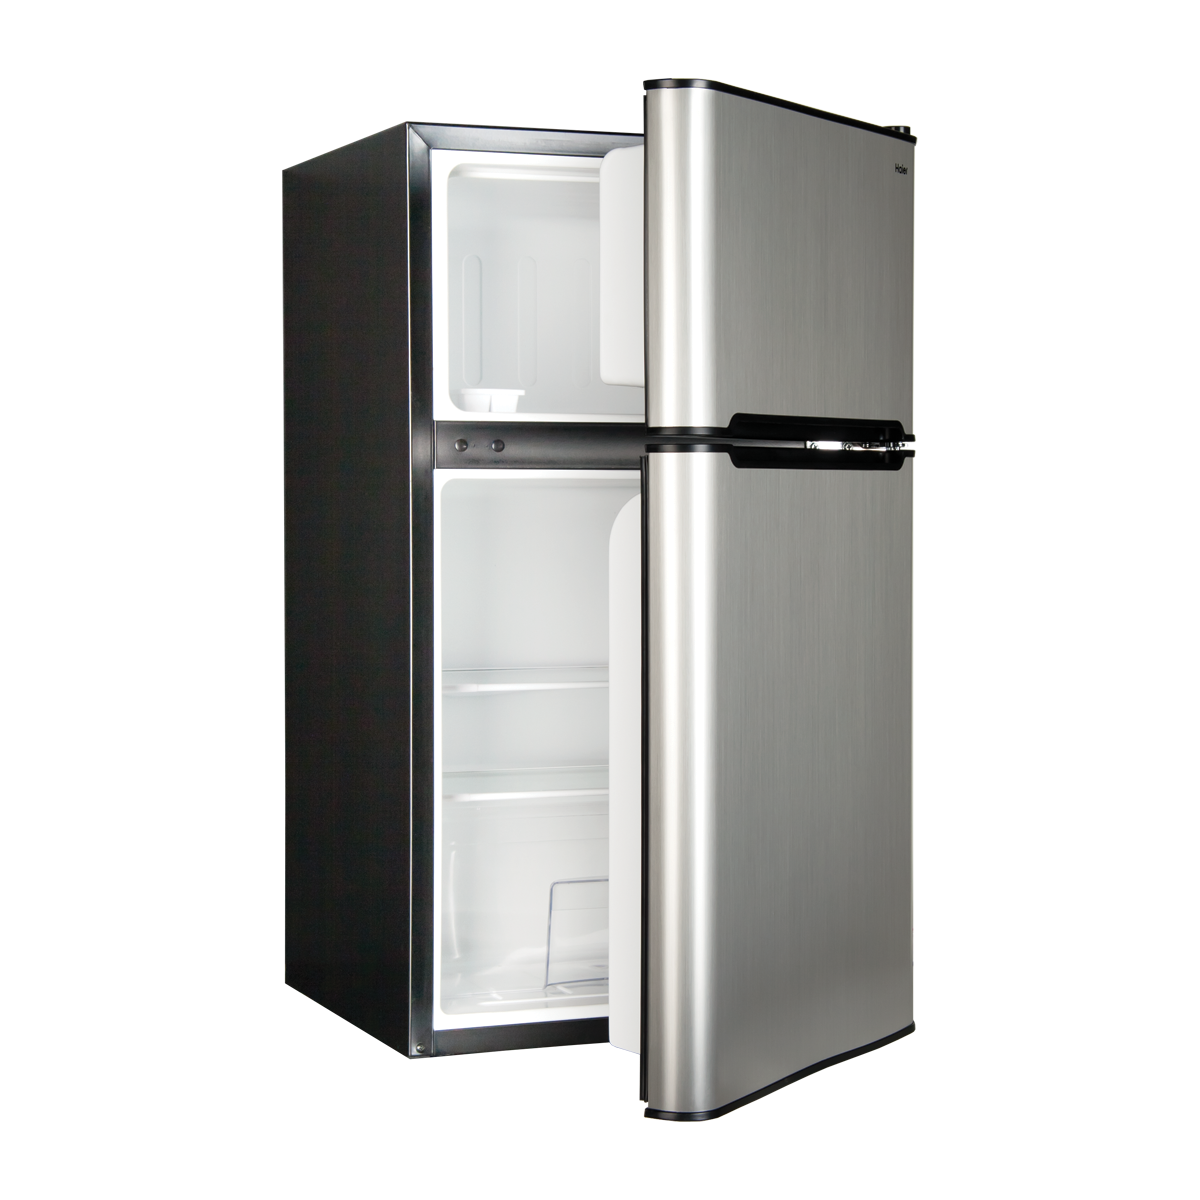 Alquiler de neveras - rent a refrigerator